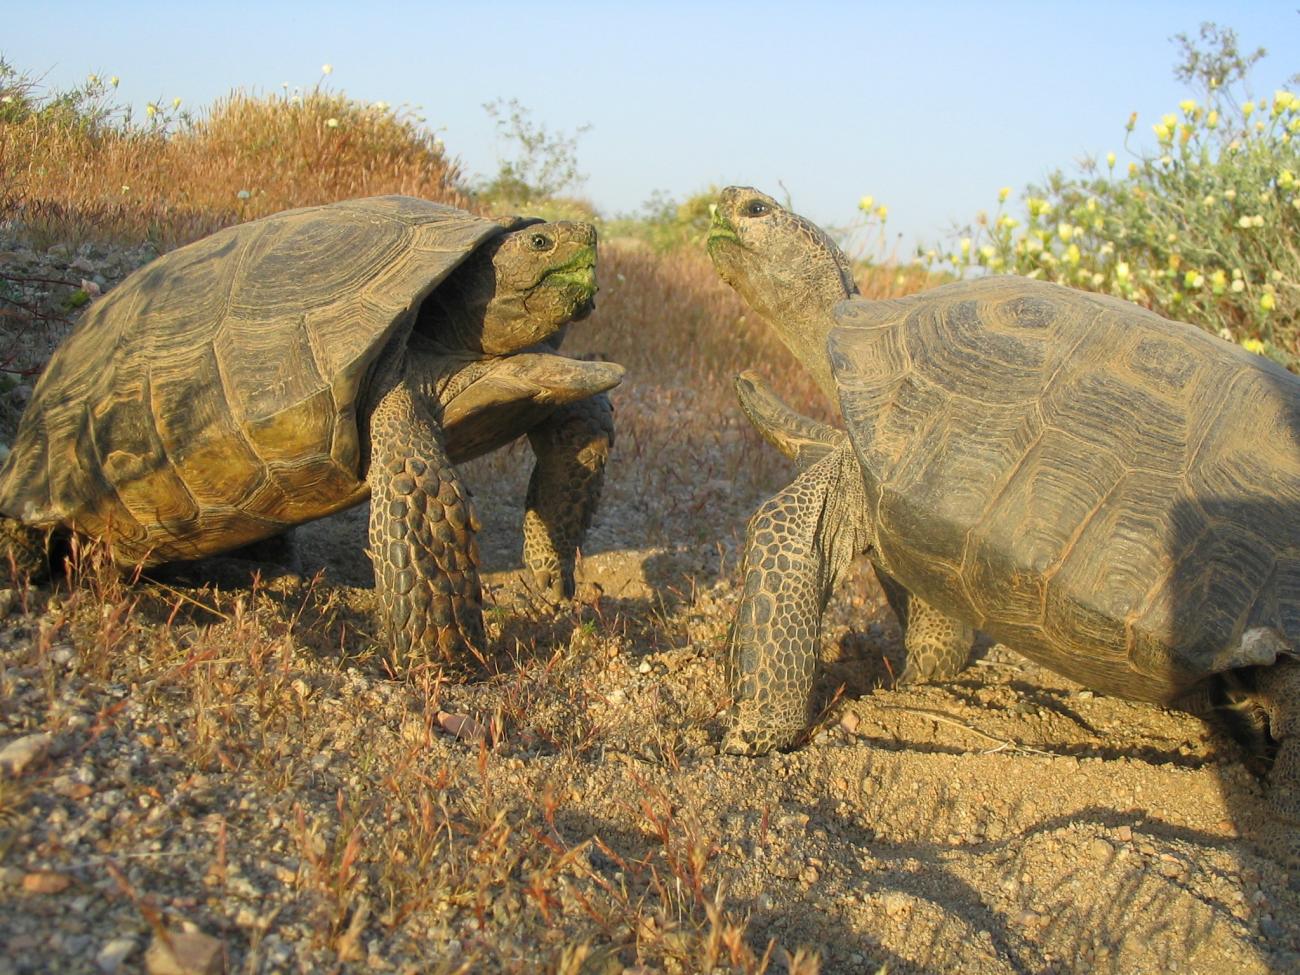 Male tortoises battling for a female.